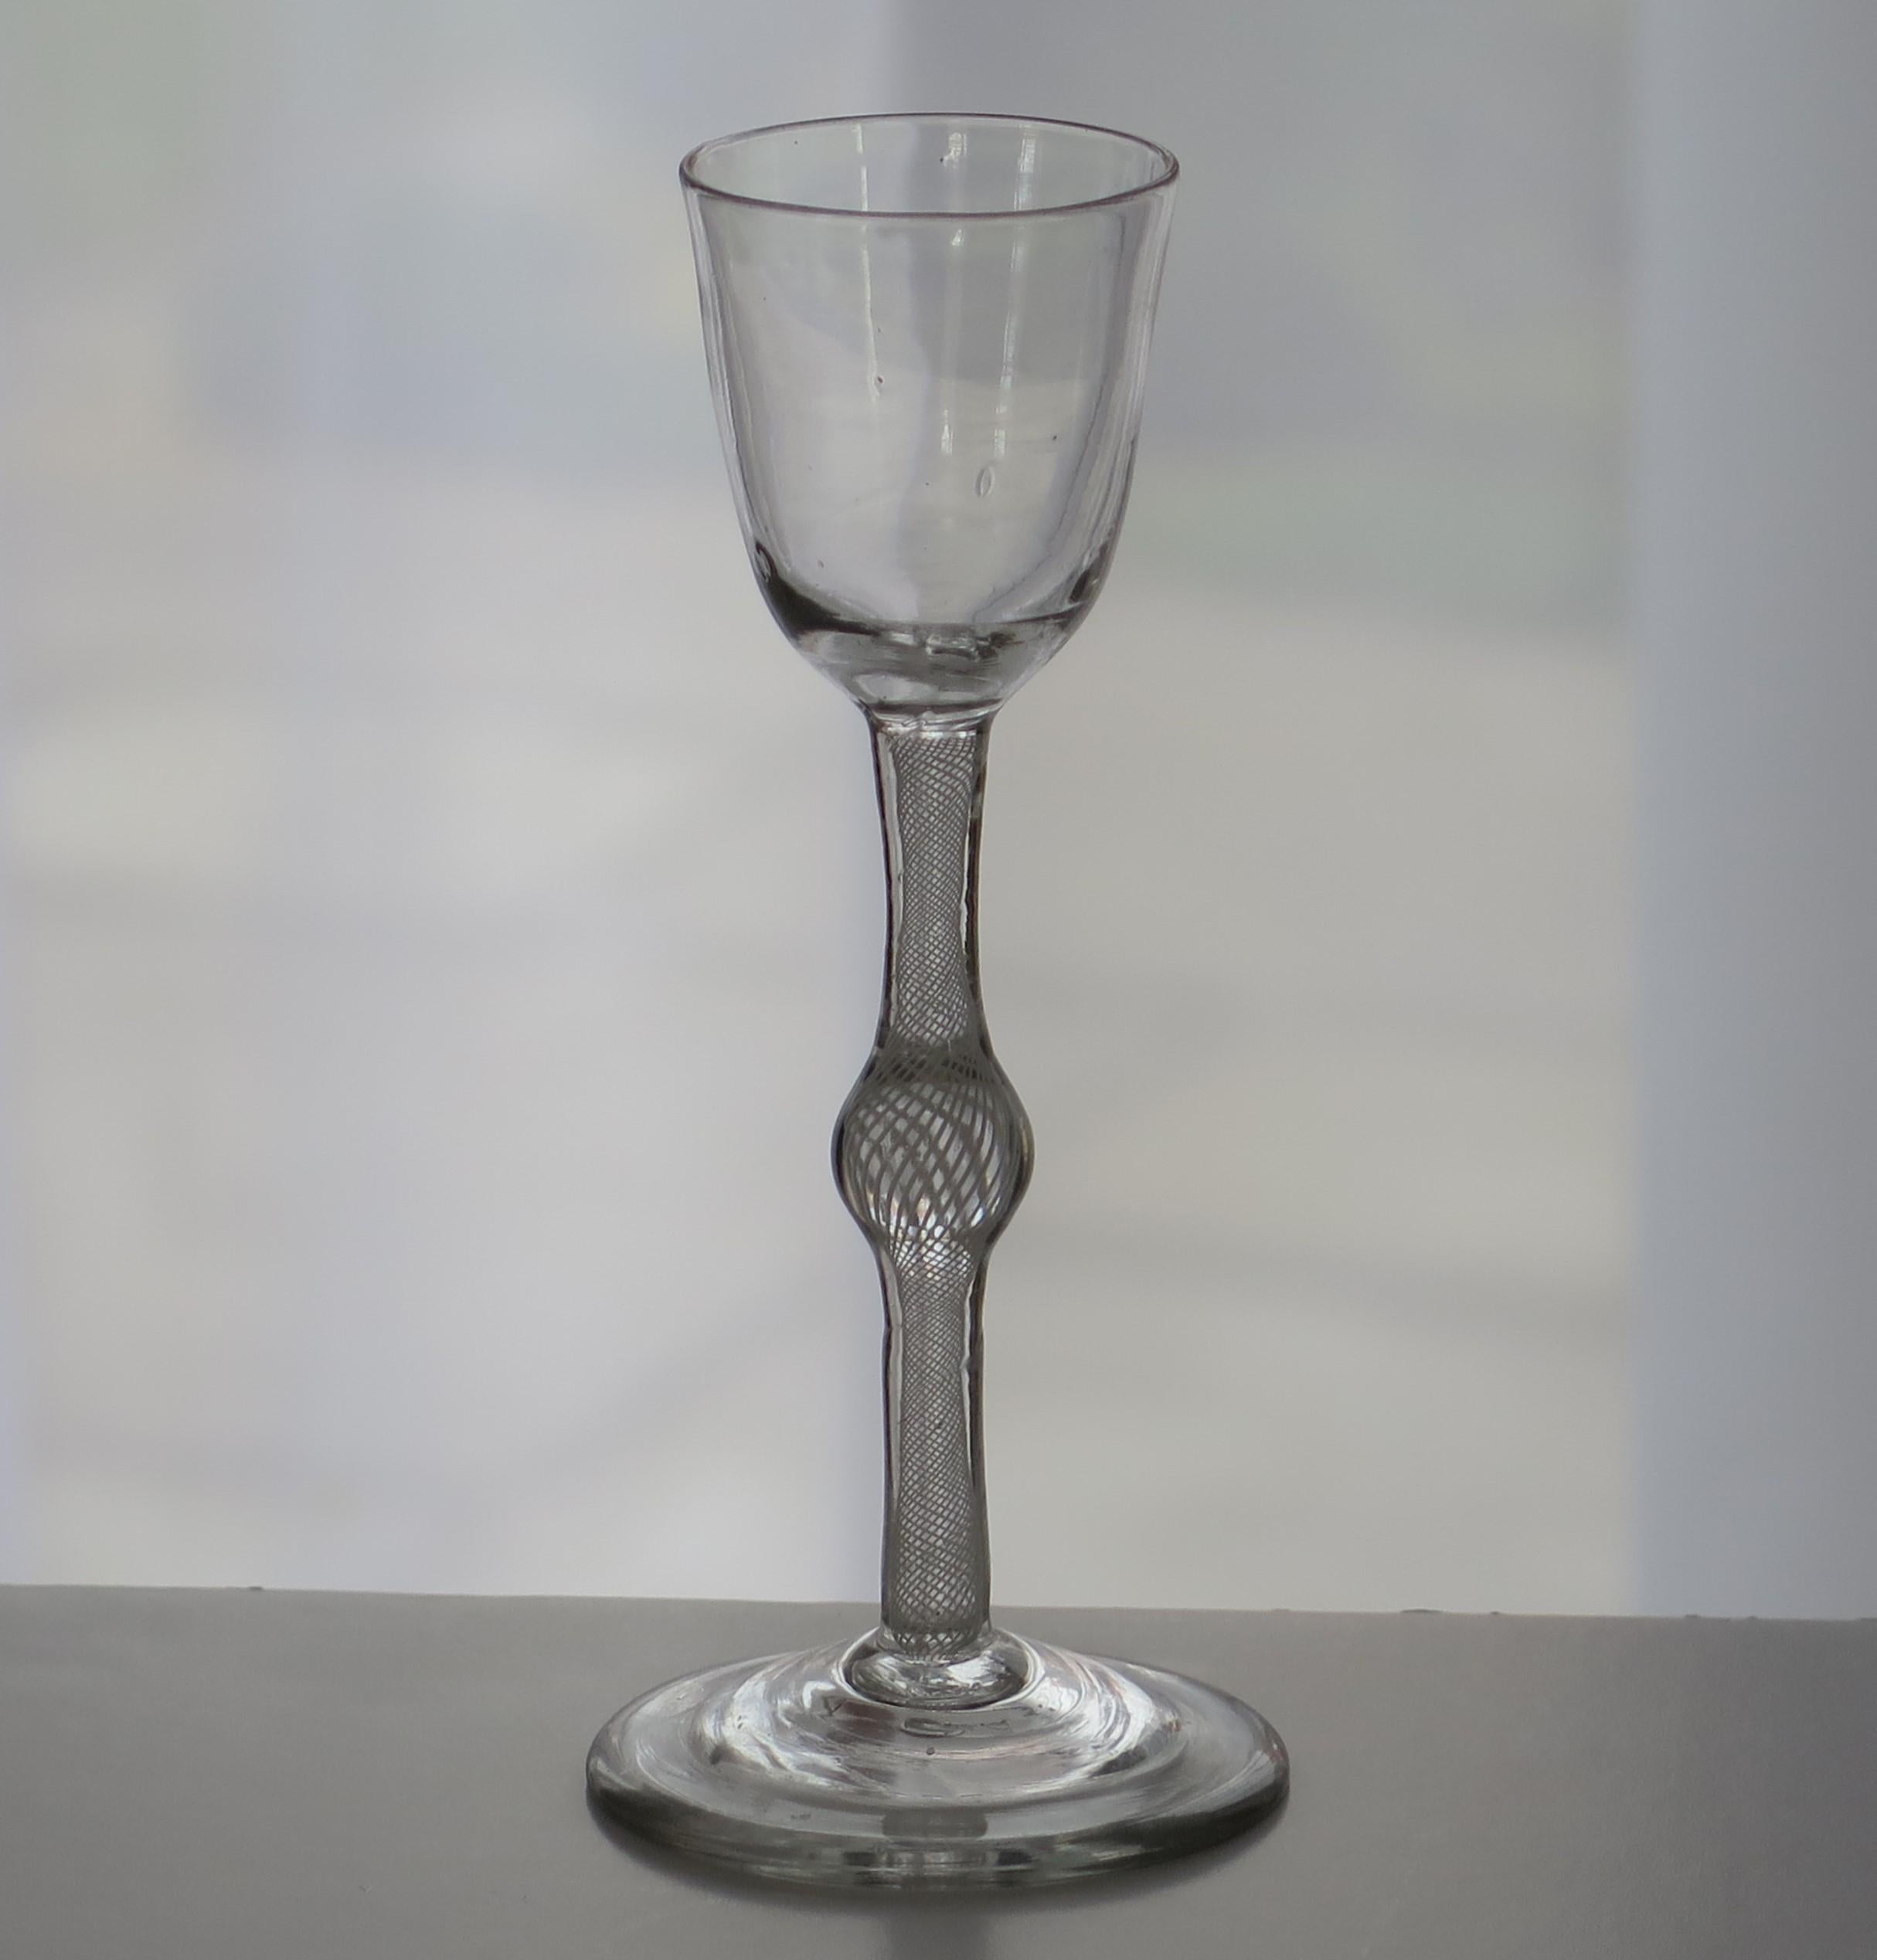 Il s'agit d'un bon et grand verre à boisson cordiale soufflé à la main, anglais, du milieu du XIXe siècle, avec une tige à torsion opaque à série unique (SSOT) ou à torsion en coton, datant du milieu du XVIIIe siècle, vers 1765.

Ces lunettes sont